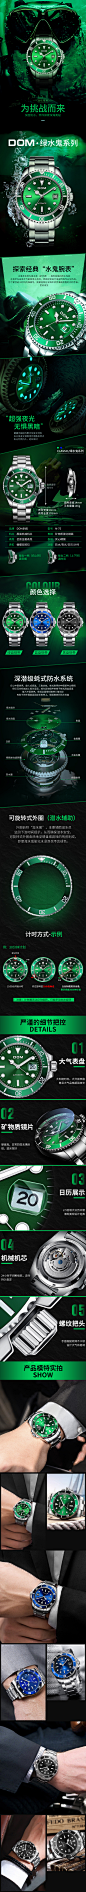 个性时尚绿水鬼系列机械腕表